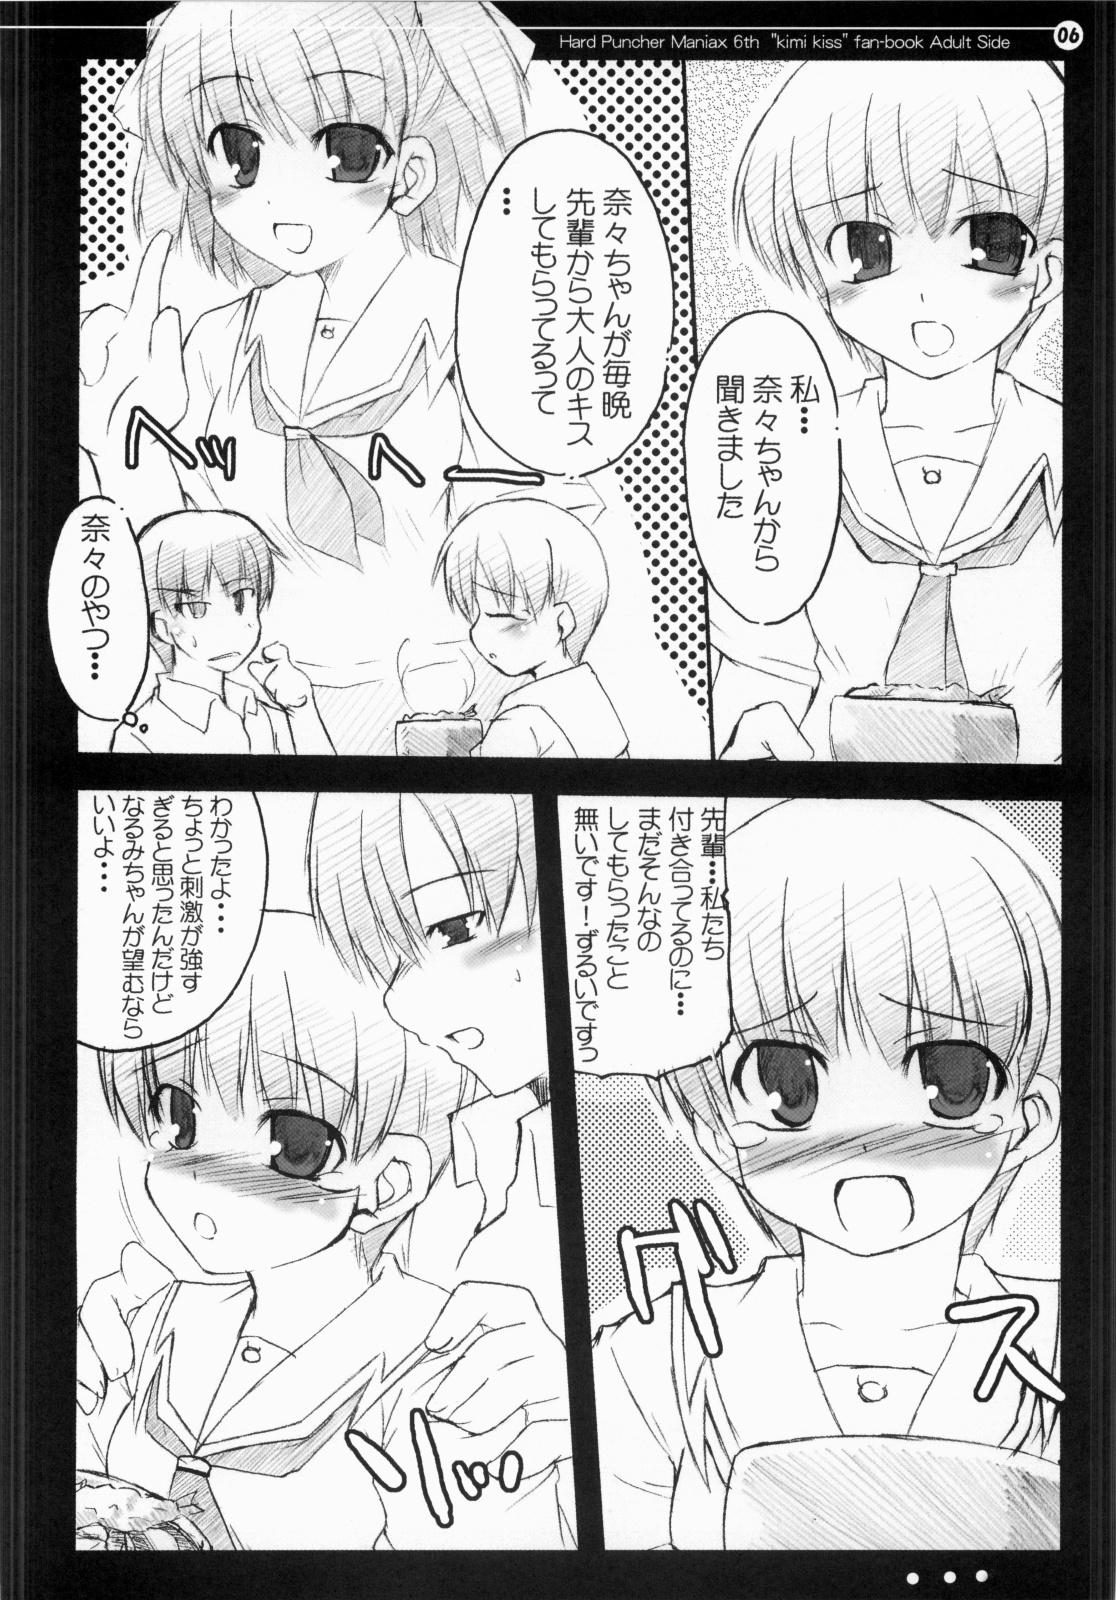 Lady Nana to Narumi no Motto Kisu Shite!! - Kimikiss Animation - Page 5